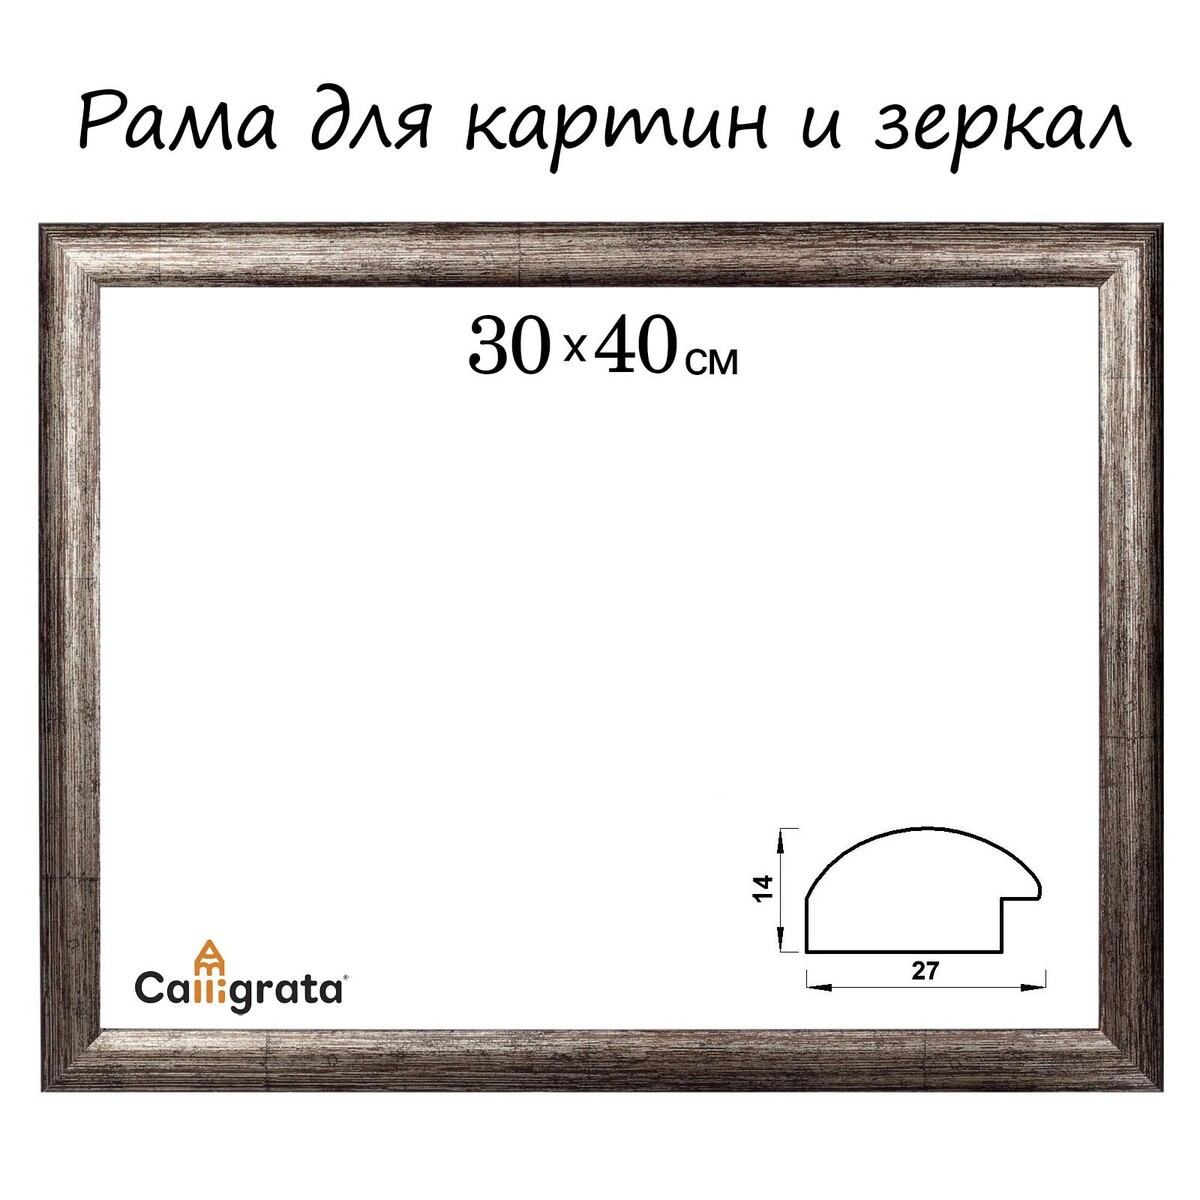 Рама для картин (зеркал) 30 х 40 х 2,7 см, пластиковая, calligrata 6472, цвет коричневая-серая навеска для панелей и зеркал d 35мм 200 шт